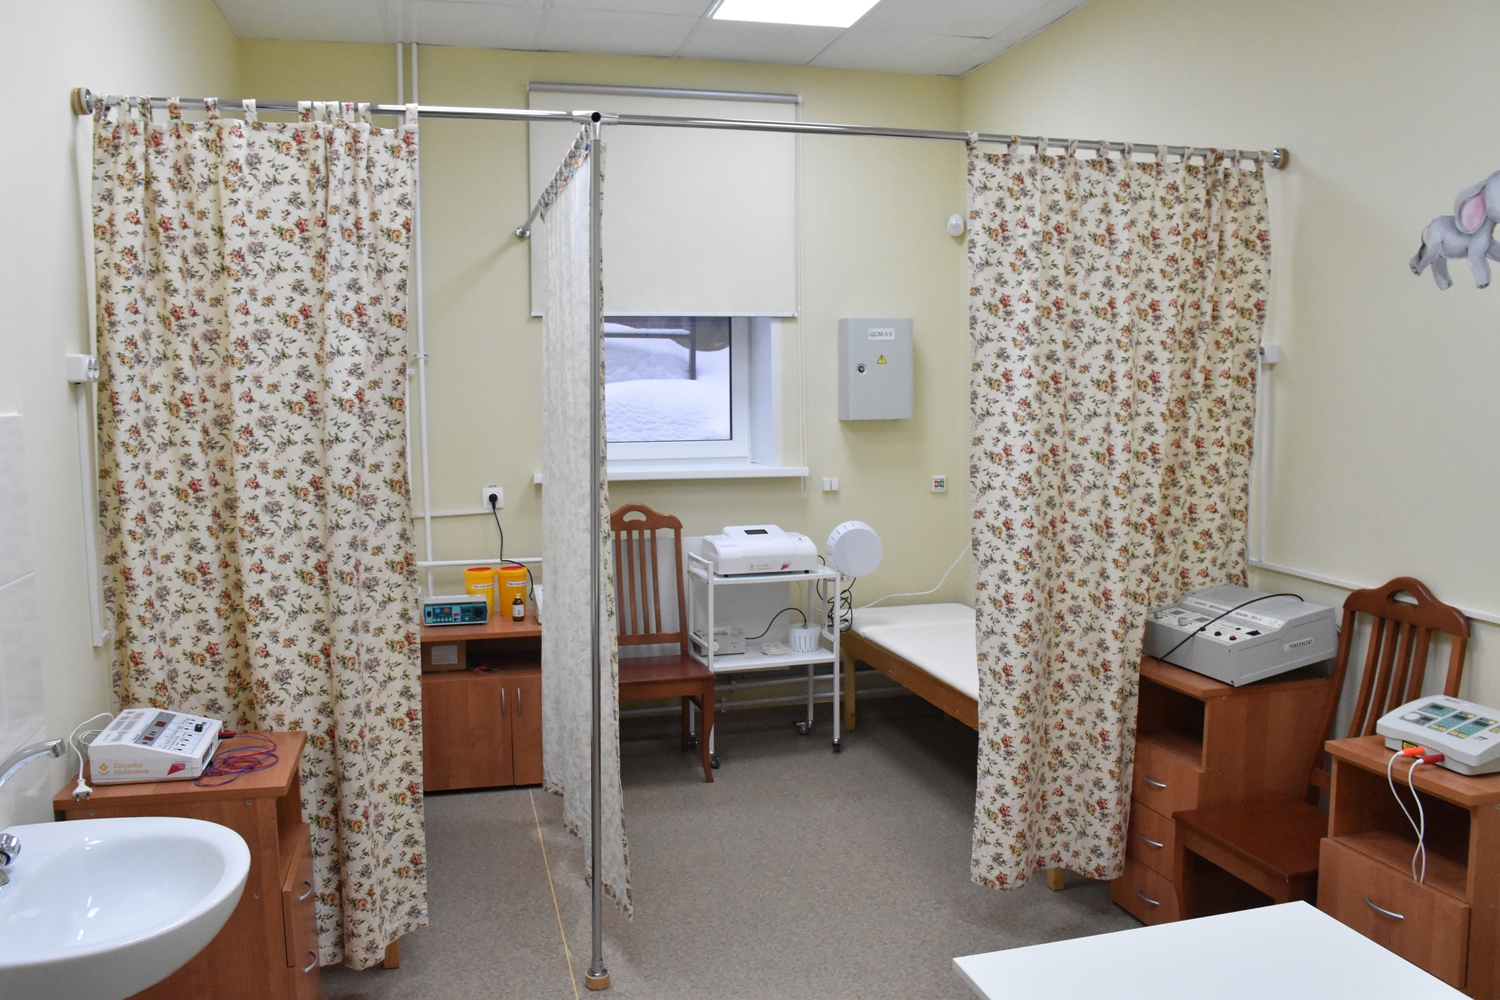 Долгожданную детскую поликлинику открыли в спальном районе Костромы